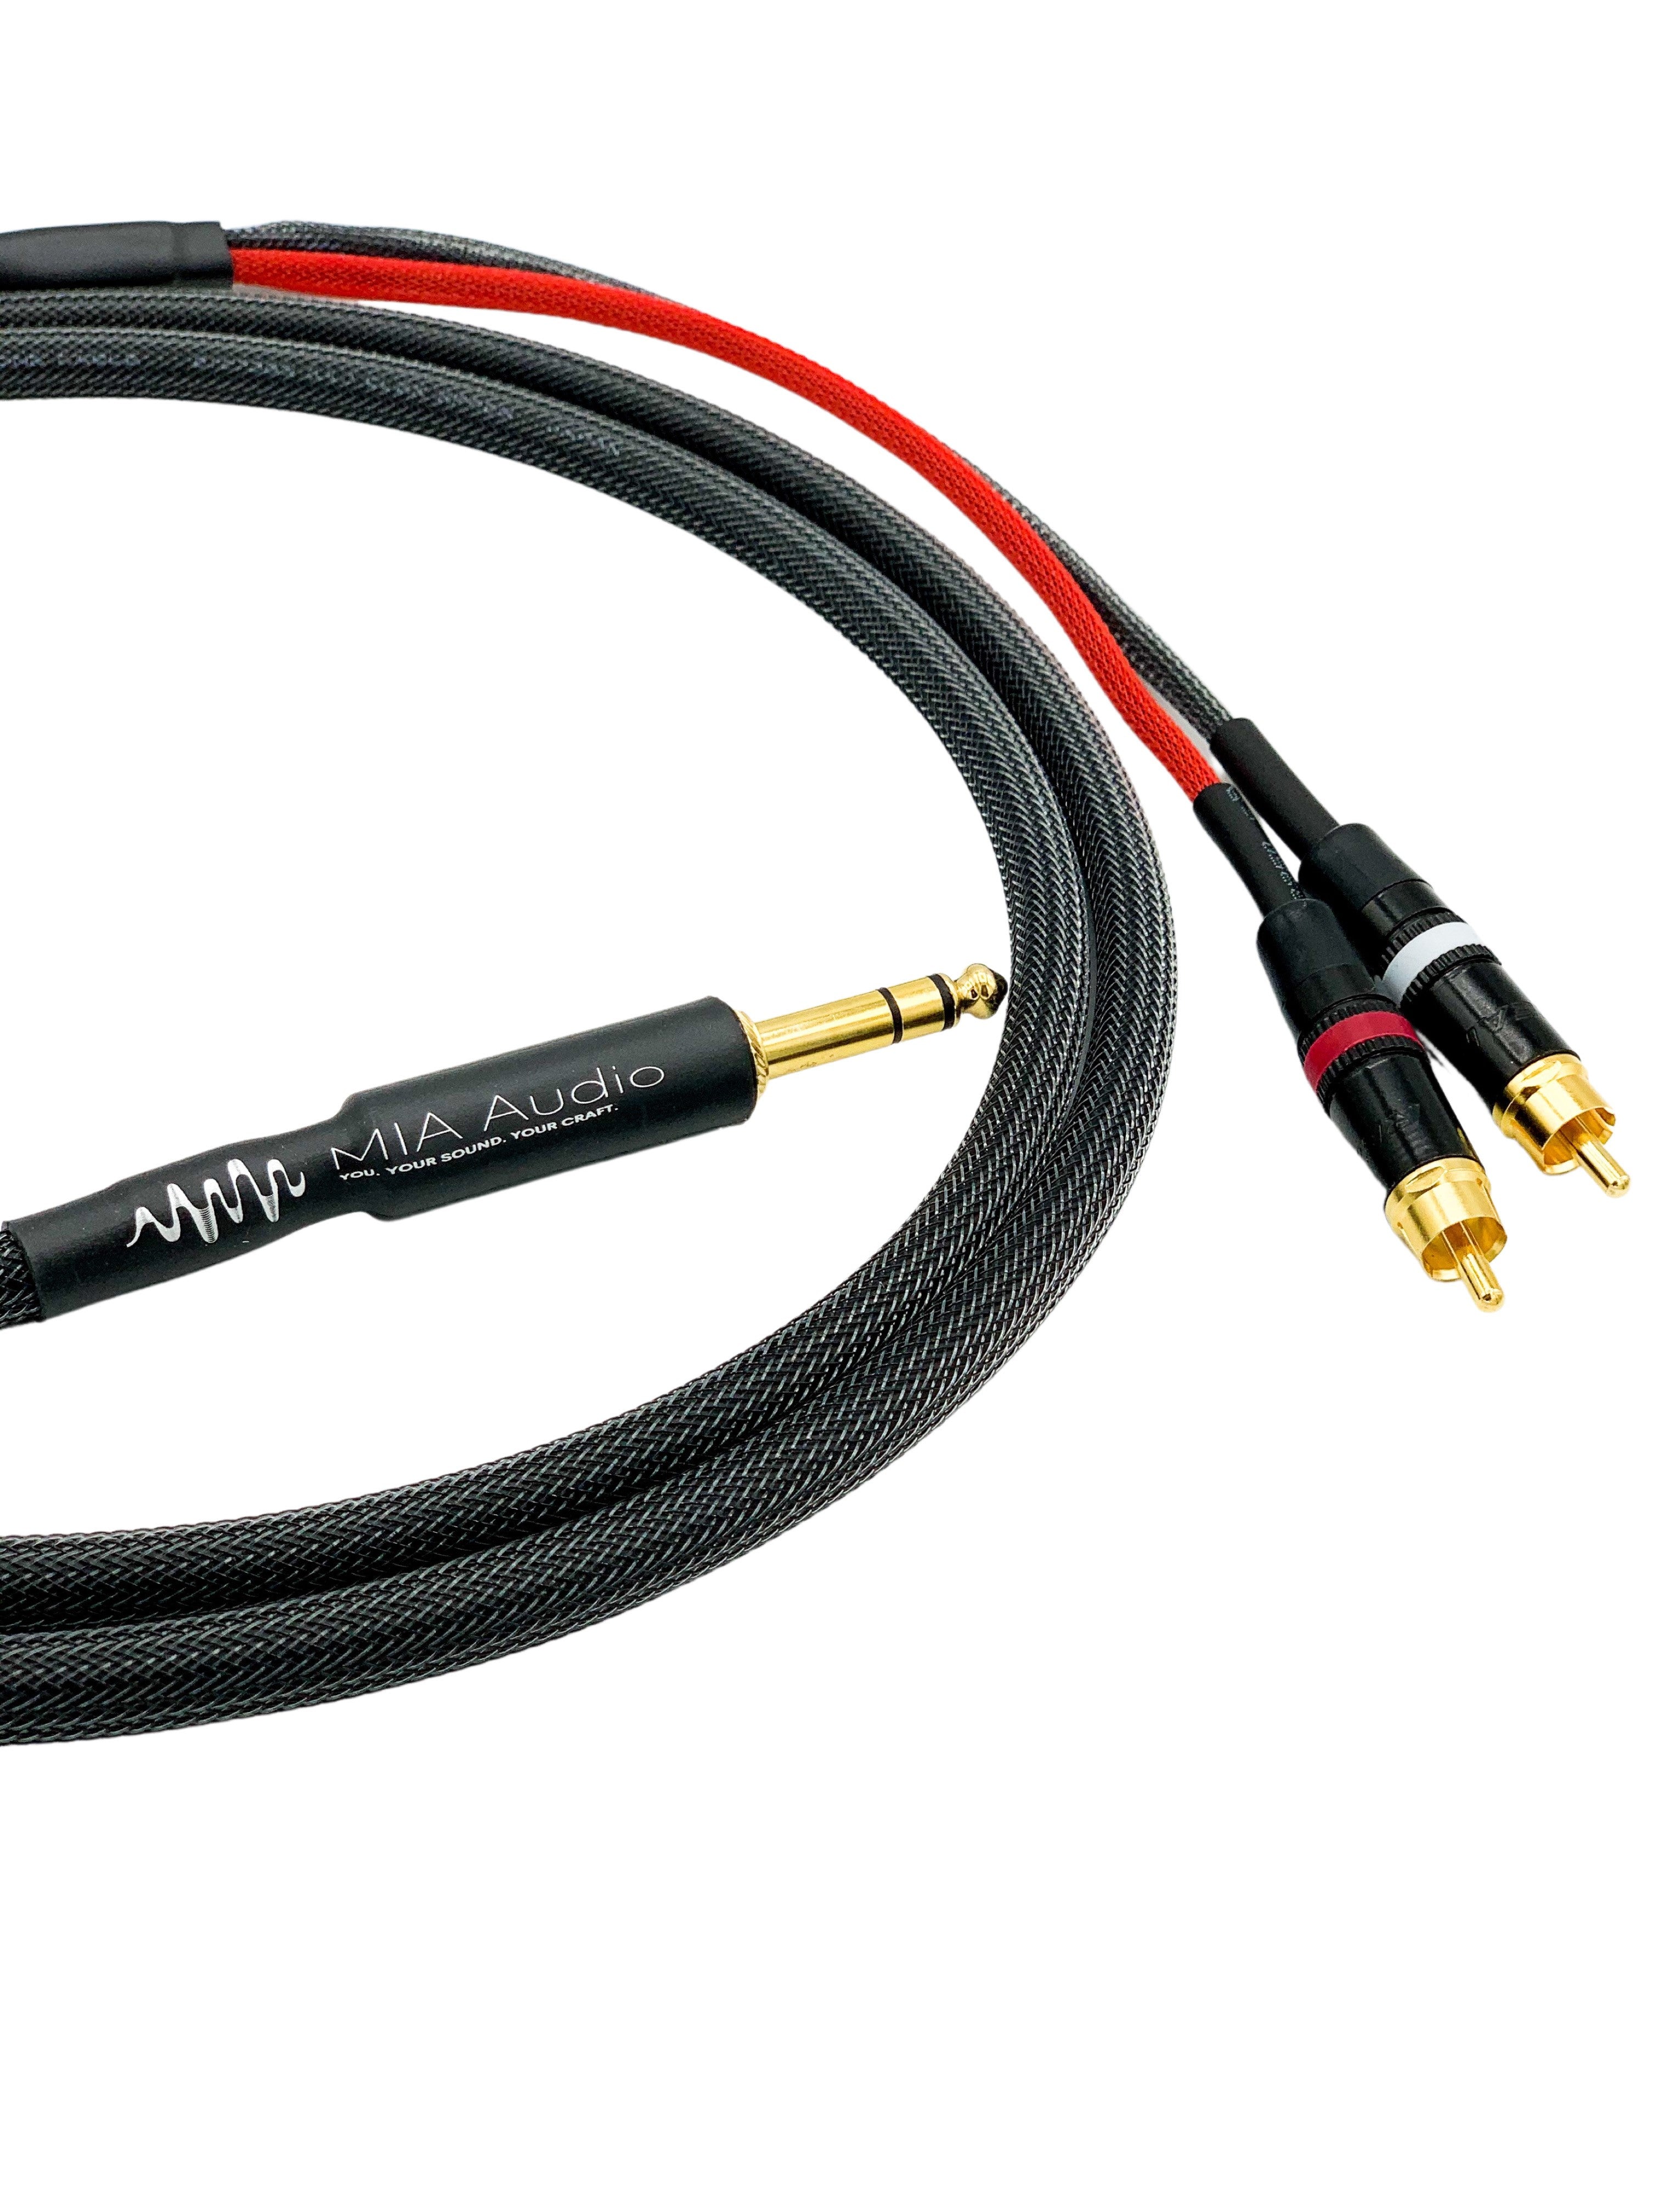 MIDI Cable – MIA Audio